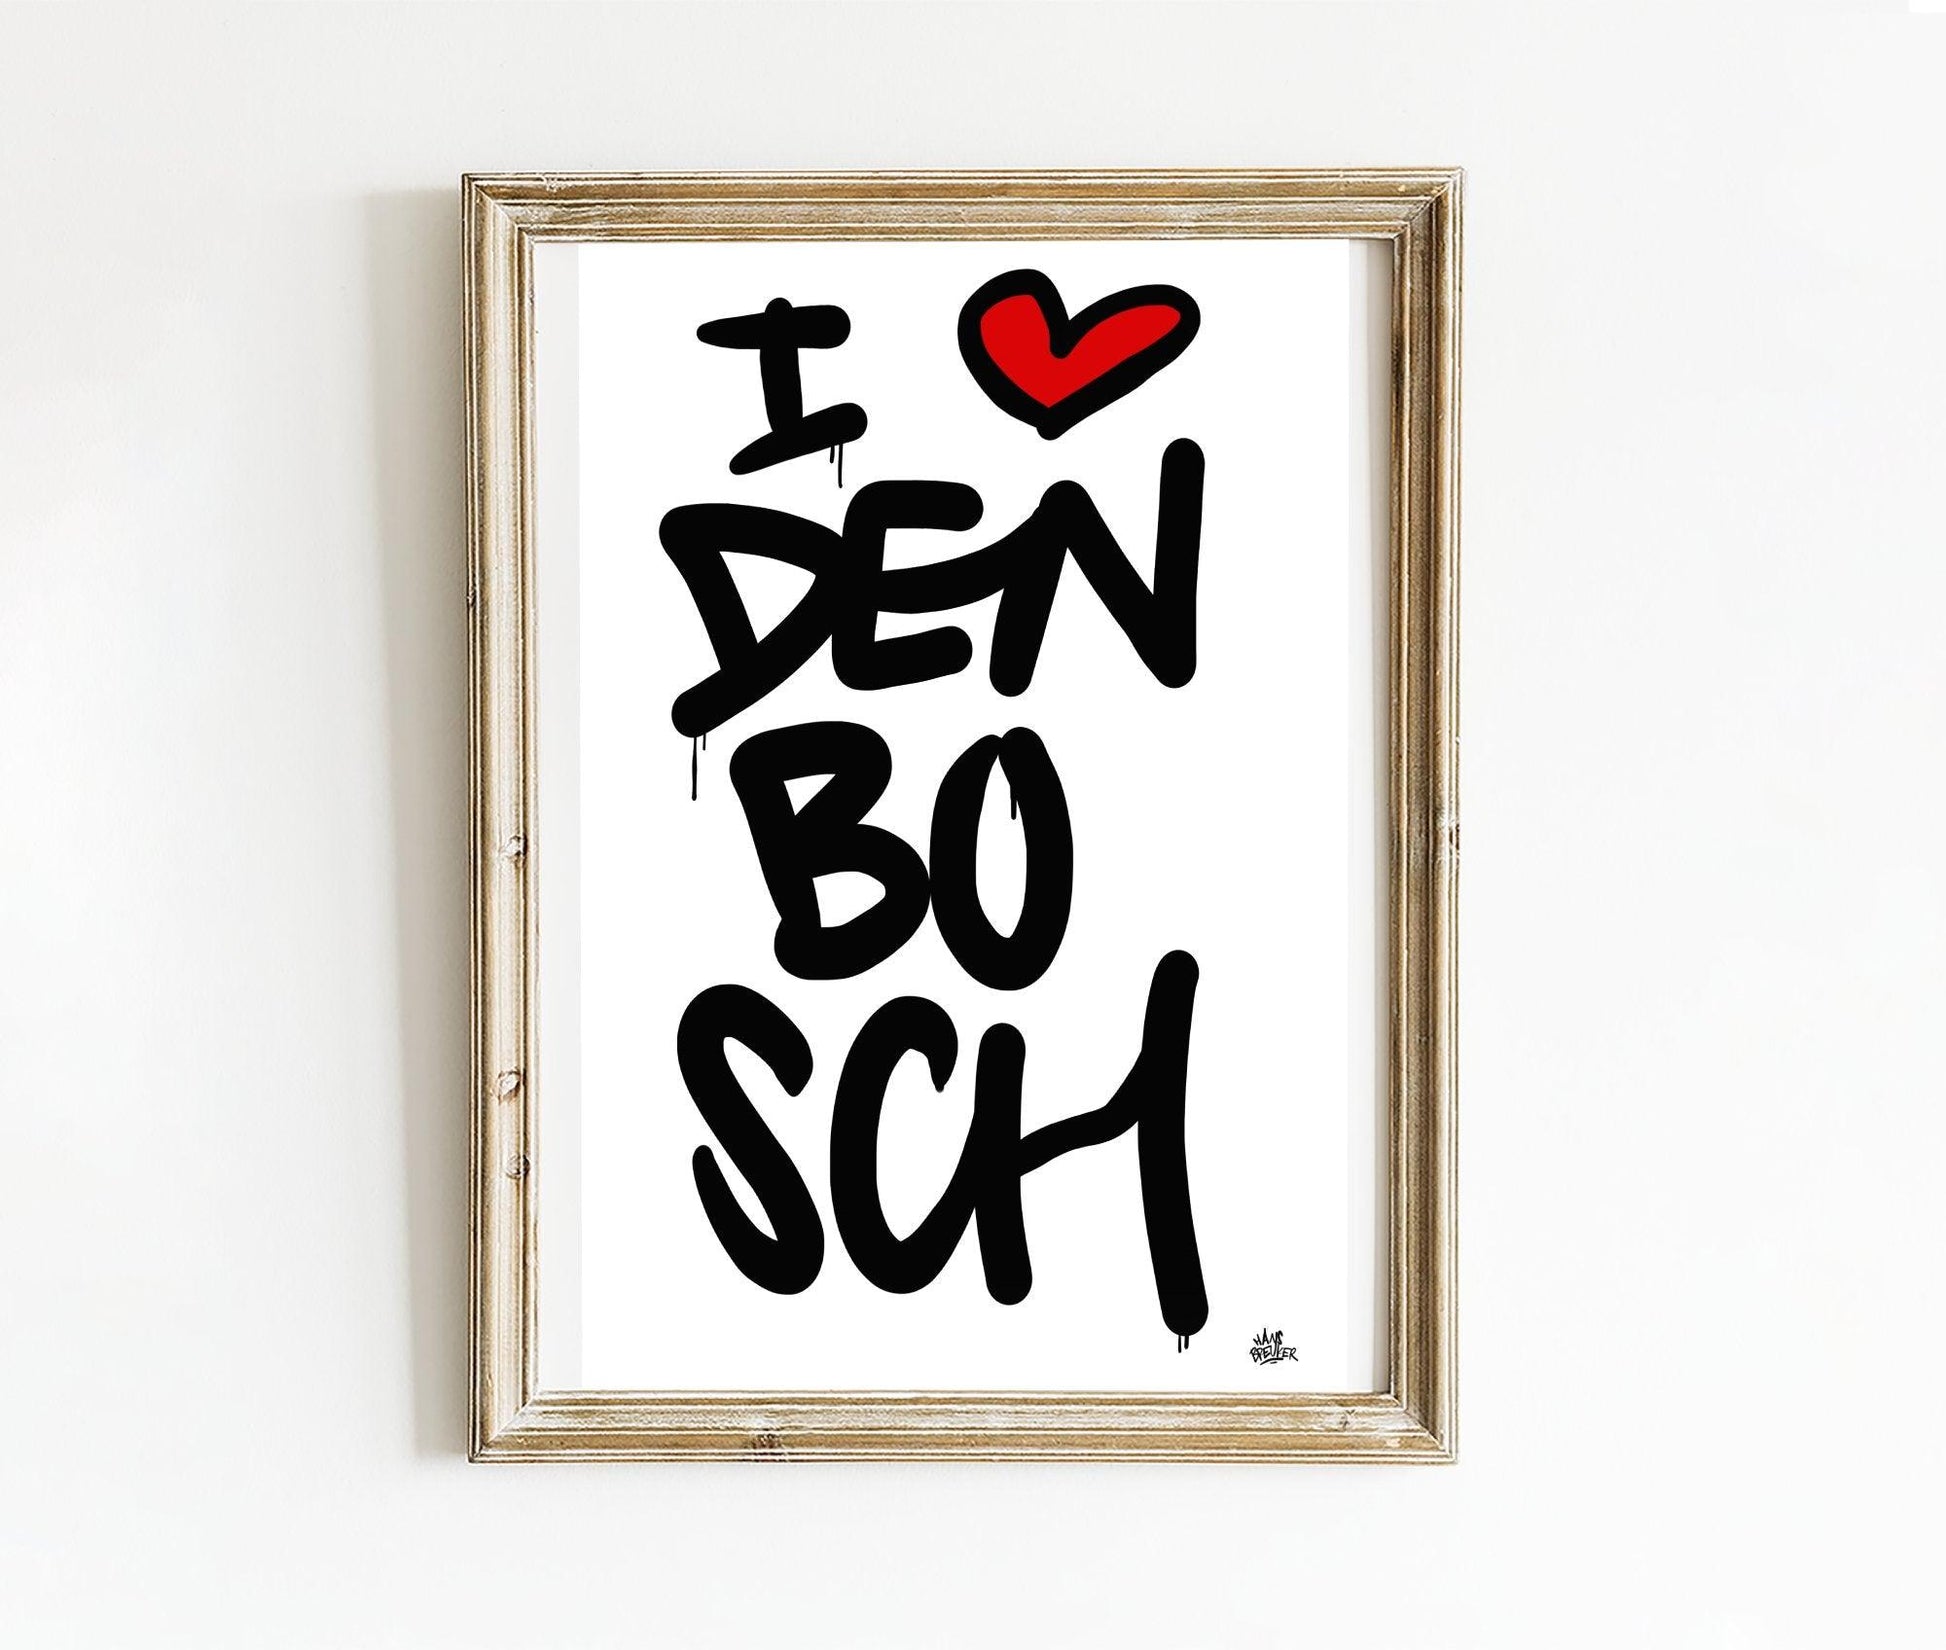 Poster Den Bosch - Hans Breuker